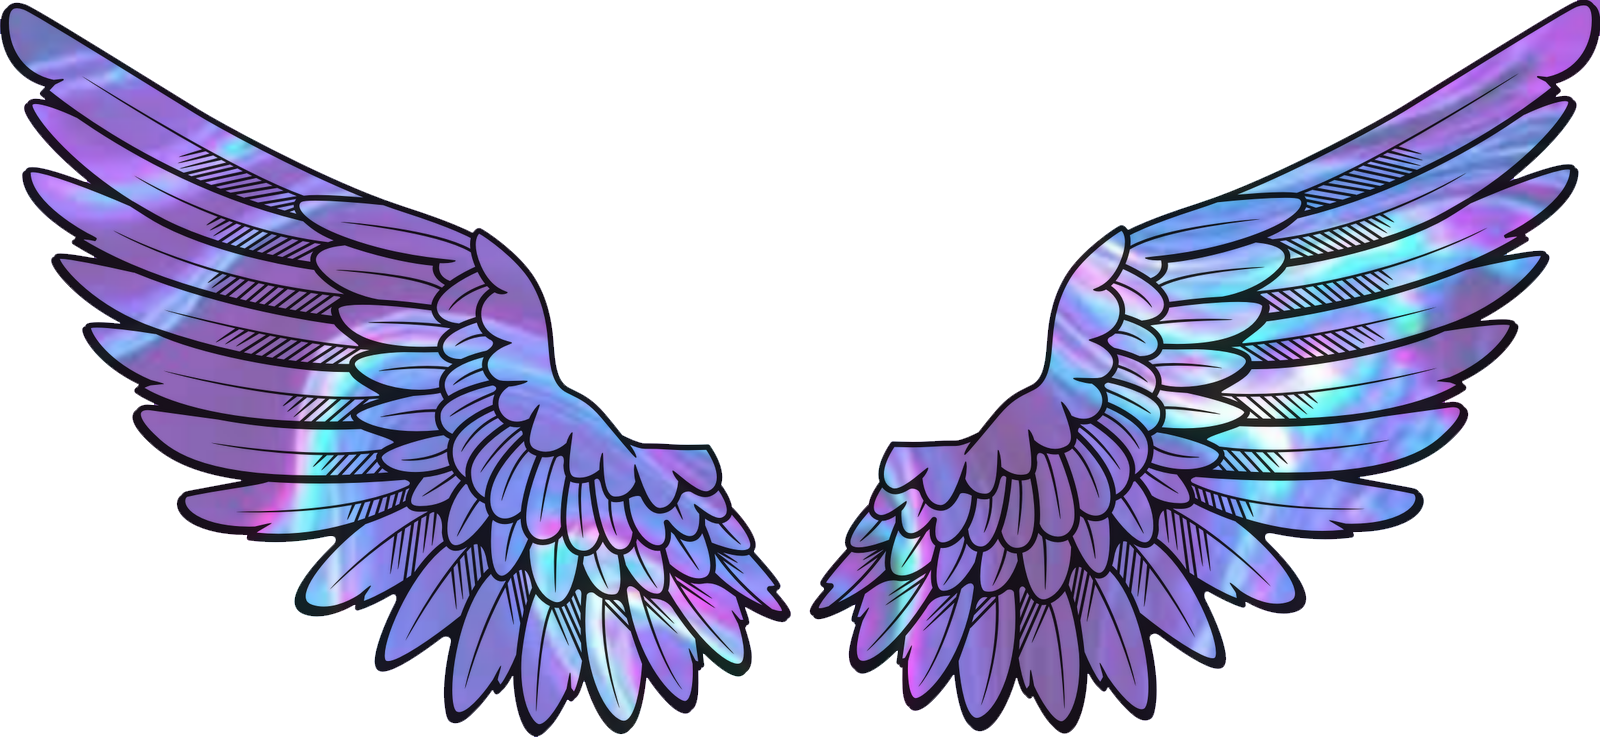 featherwings wings rainbow purple sticker by @papanda69.